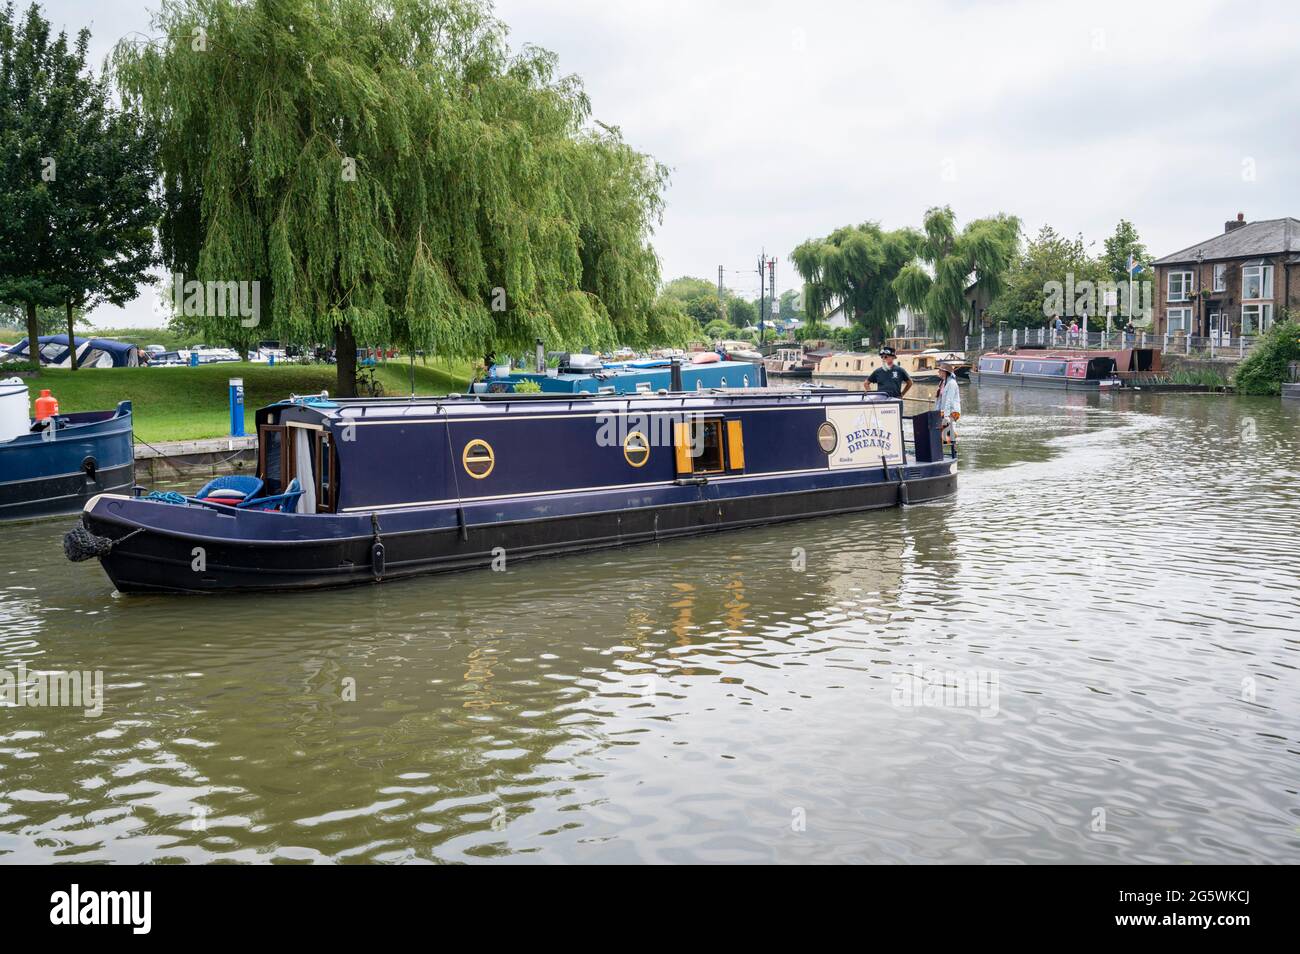 Un bateau à rames se déplace sur la rivière Great Ouse Ely Cambridgeshire au Royaume-Uni Banque D'Images